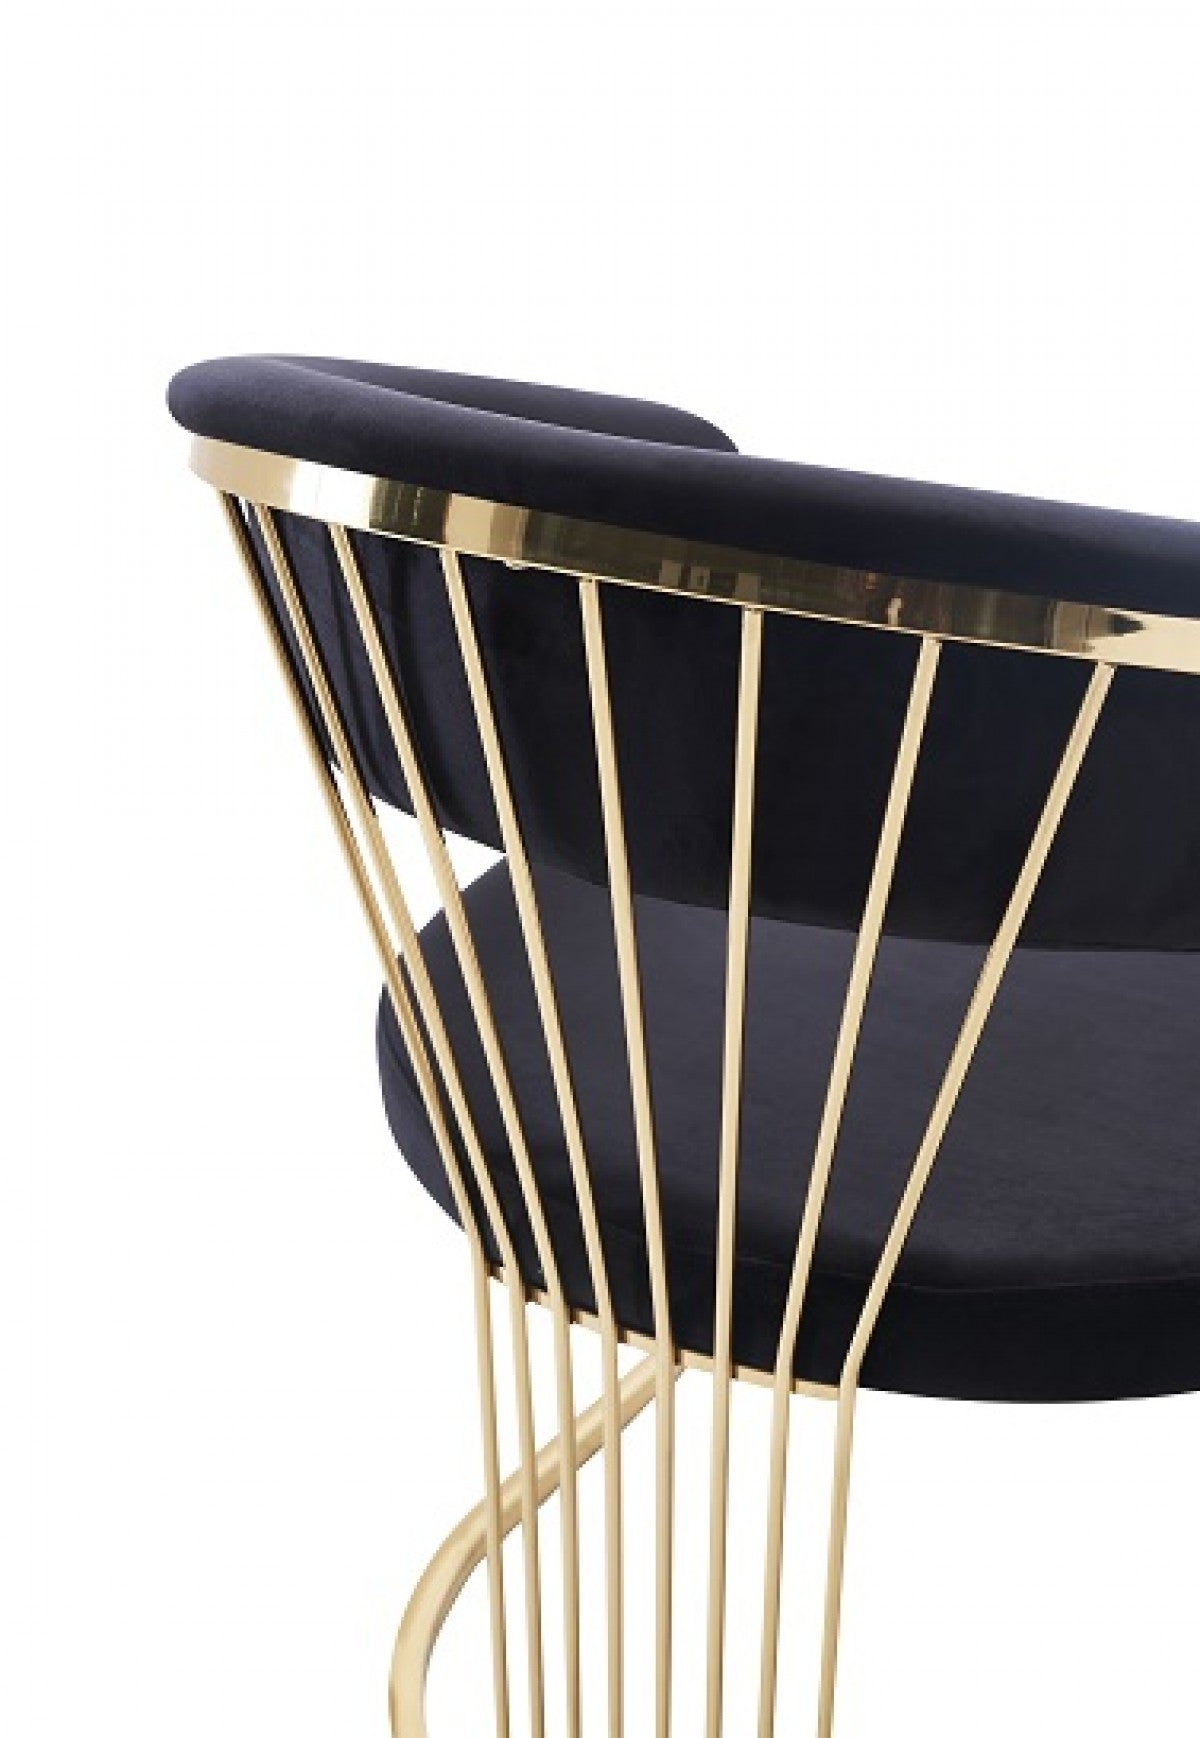 Modrest Linda - Modern Black Velvet and Gold Dining Chair